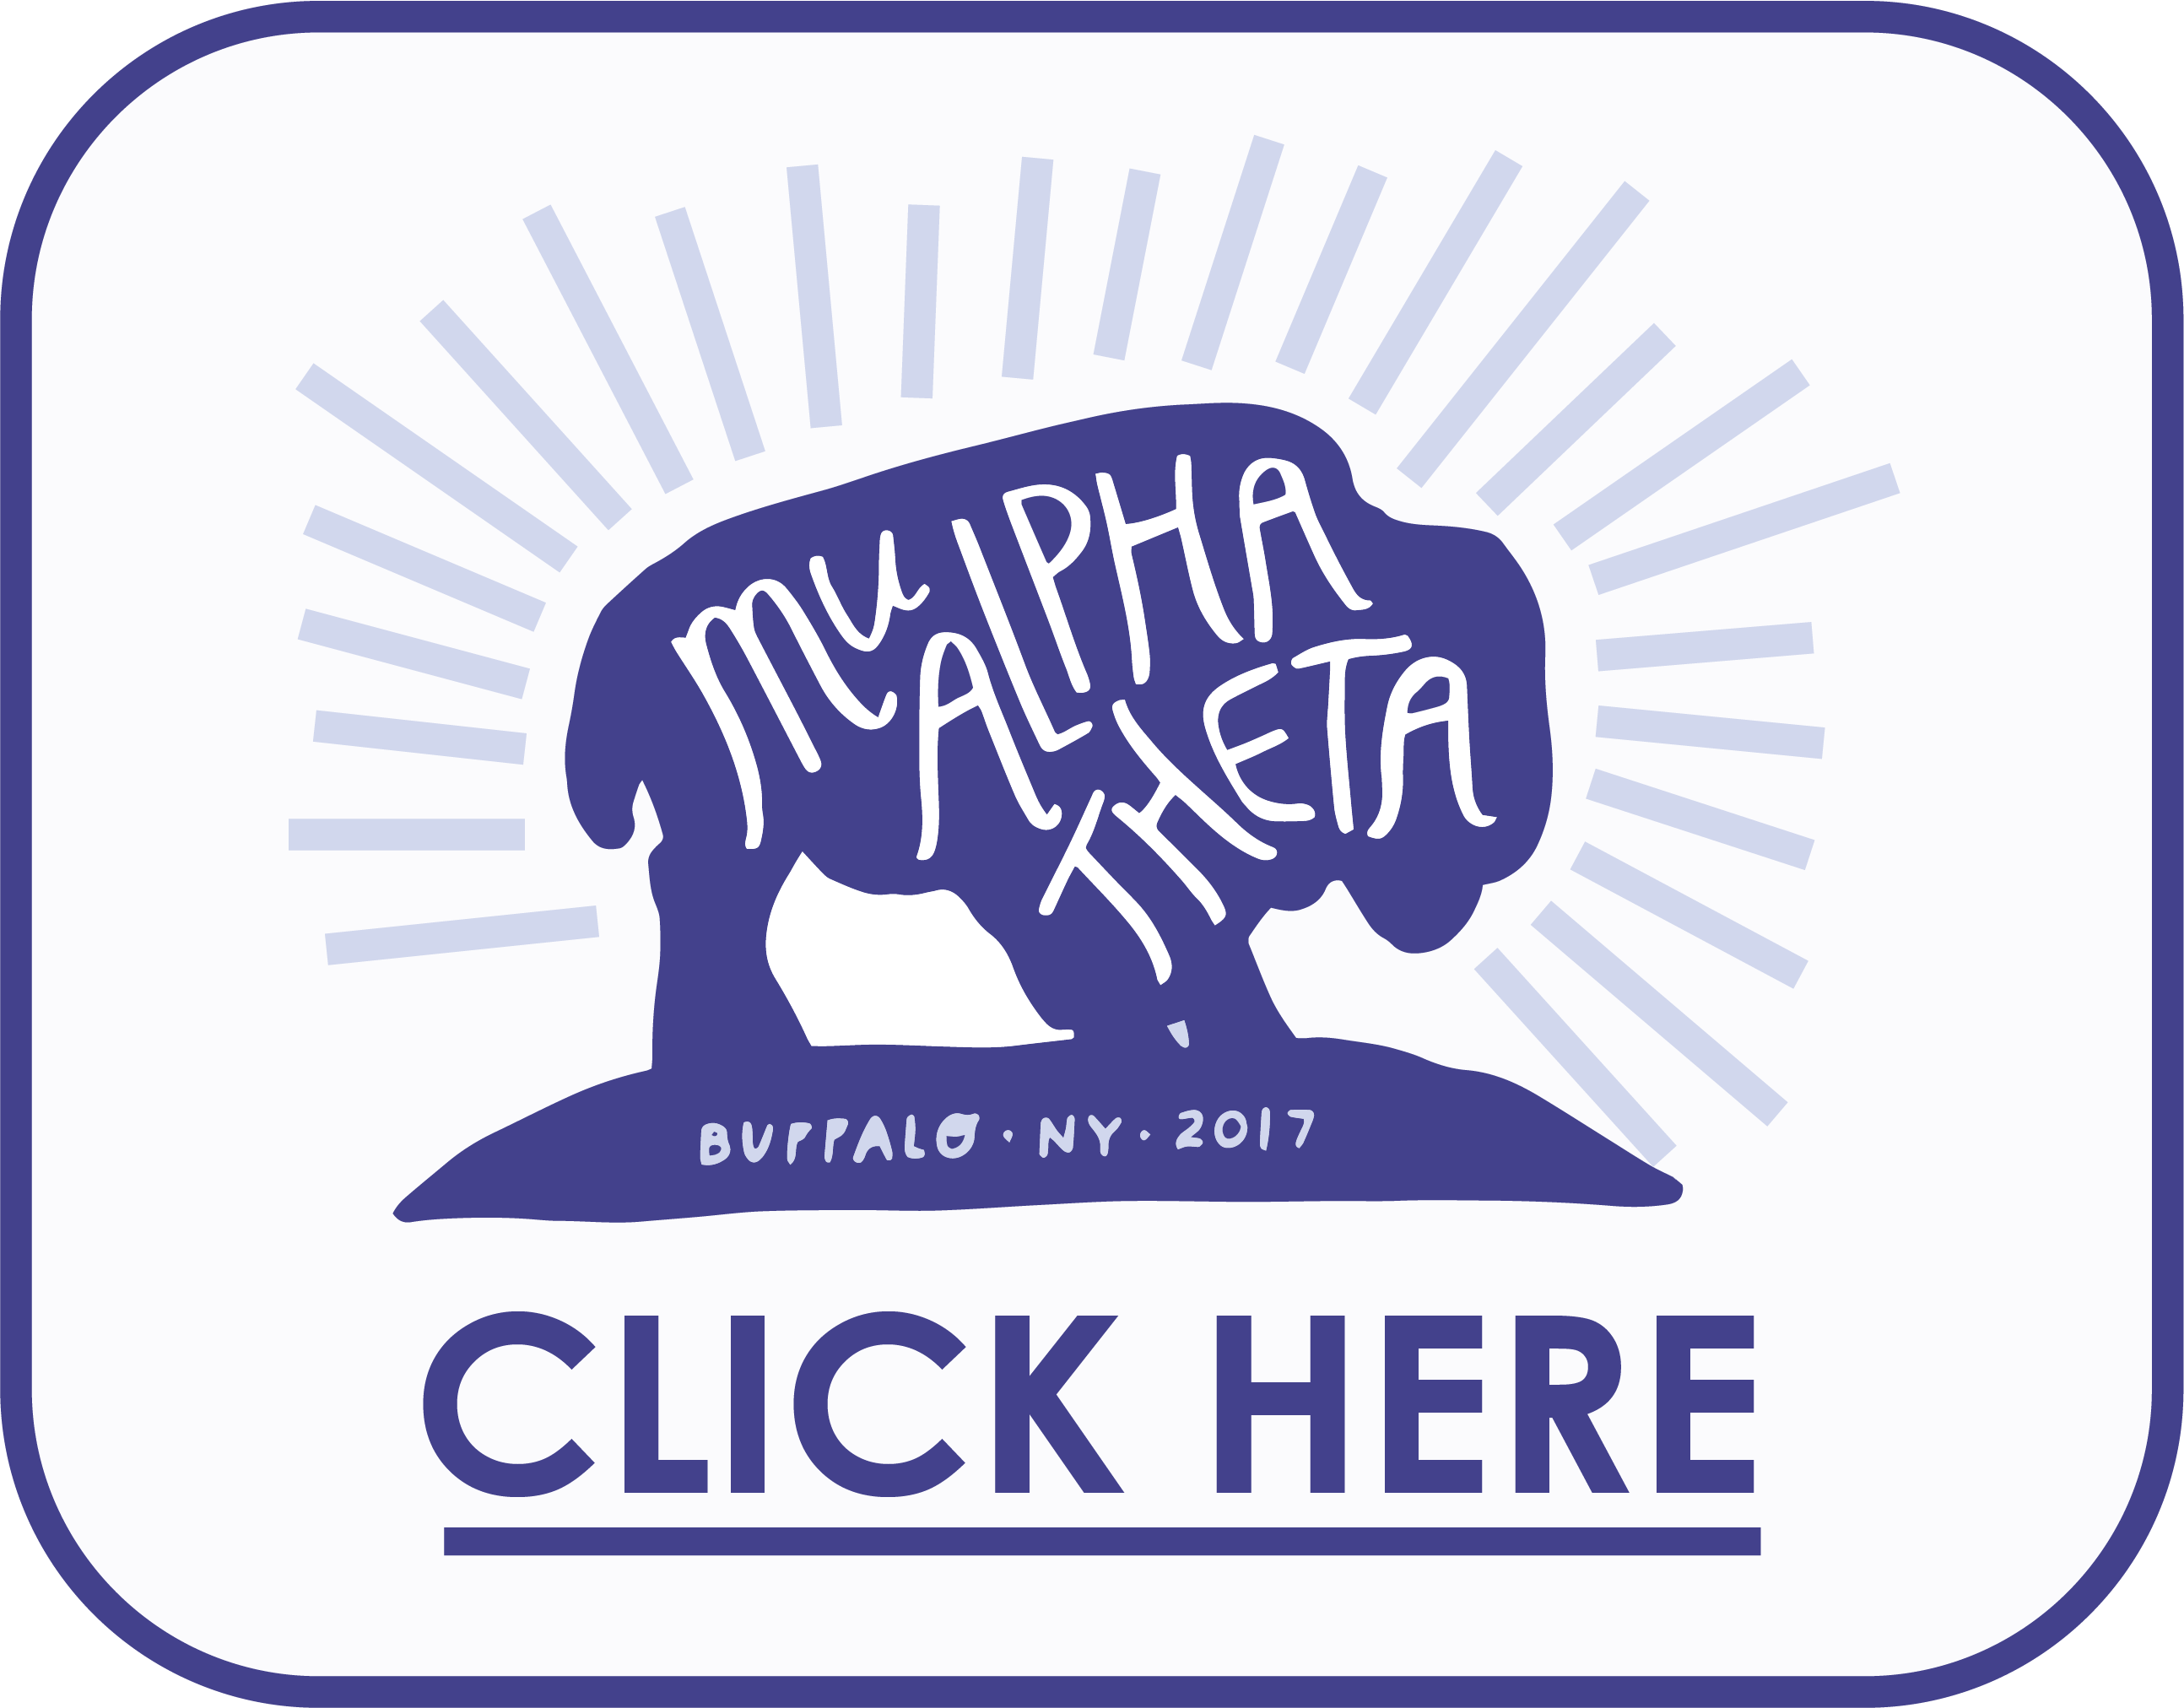 Buffalo, NY - 2017 Logo